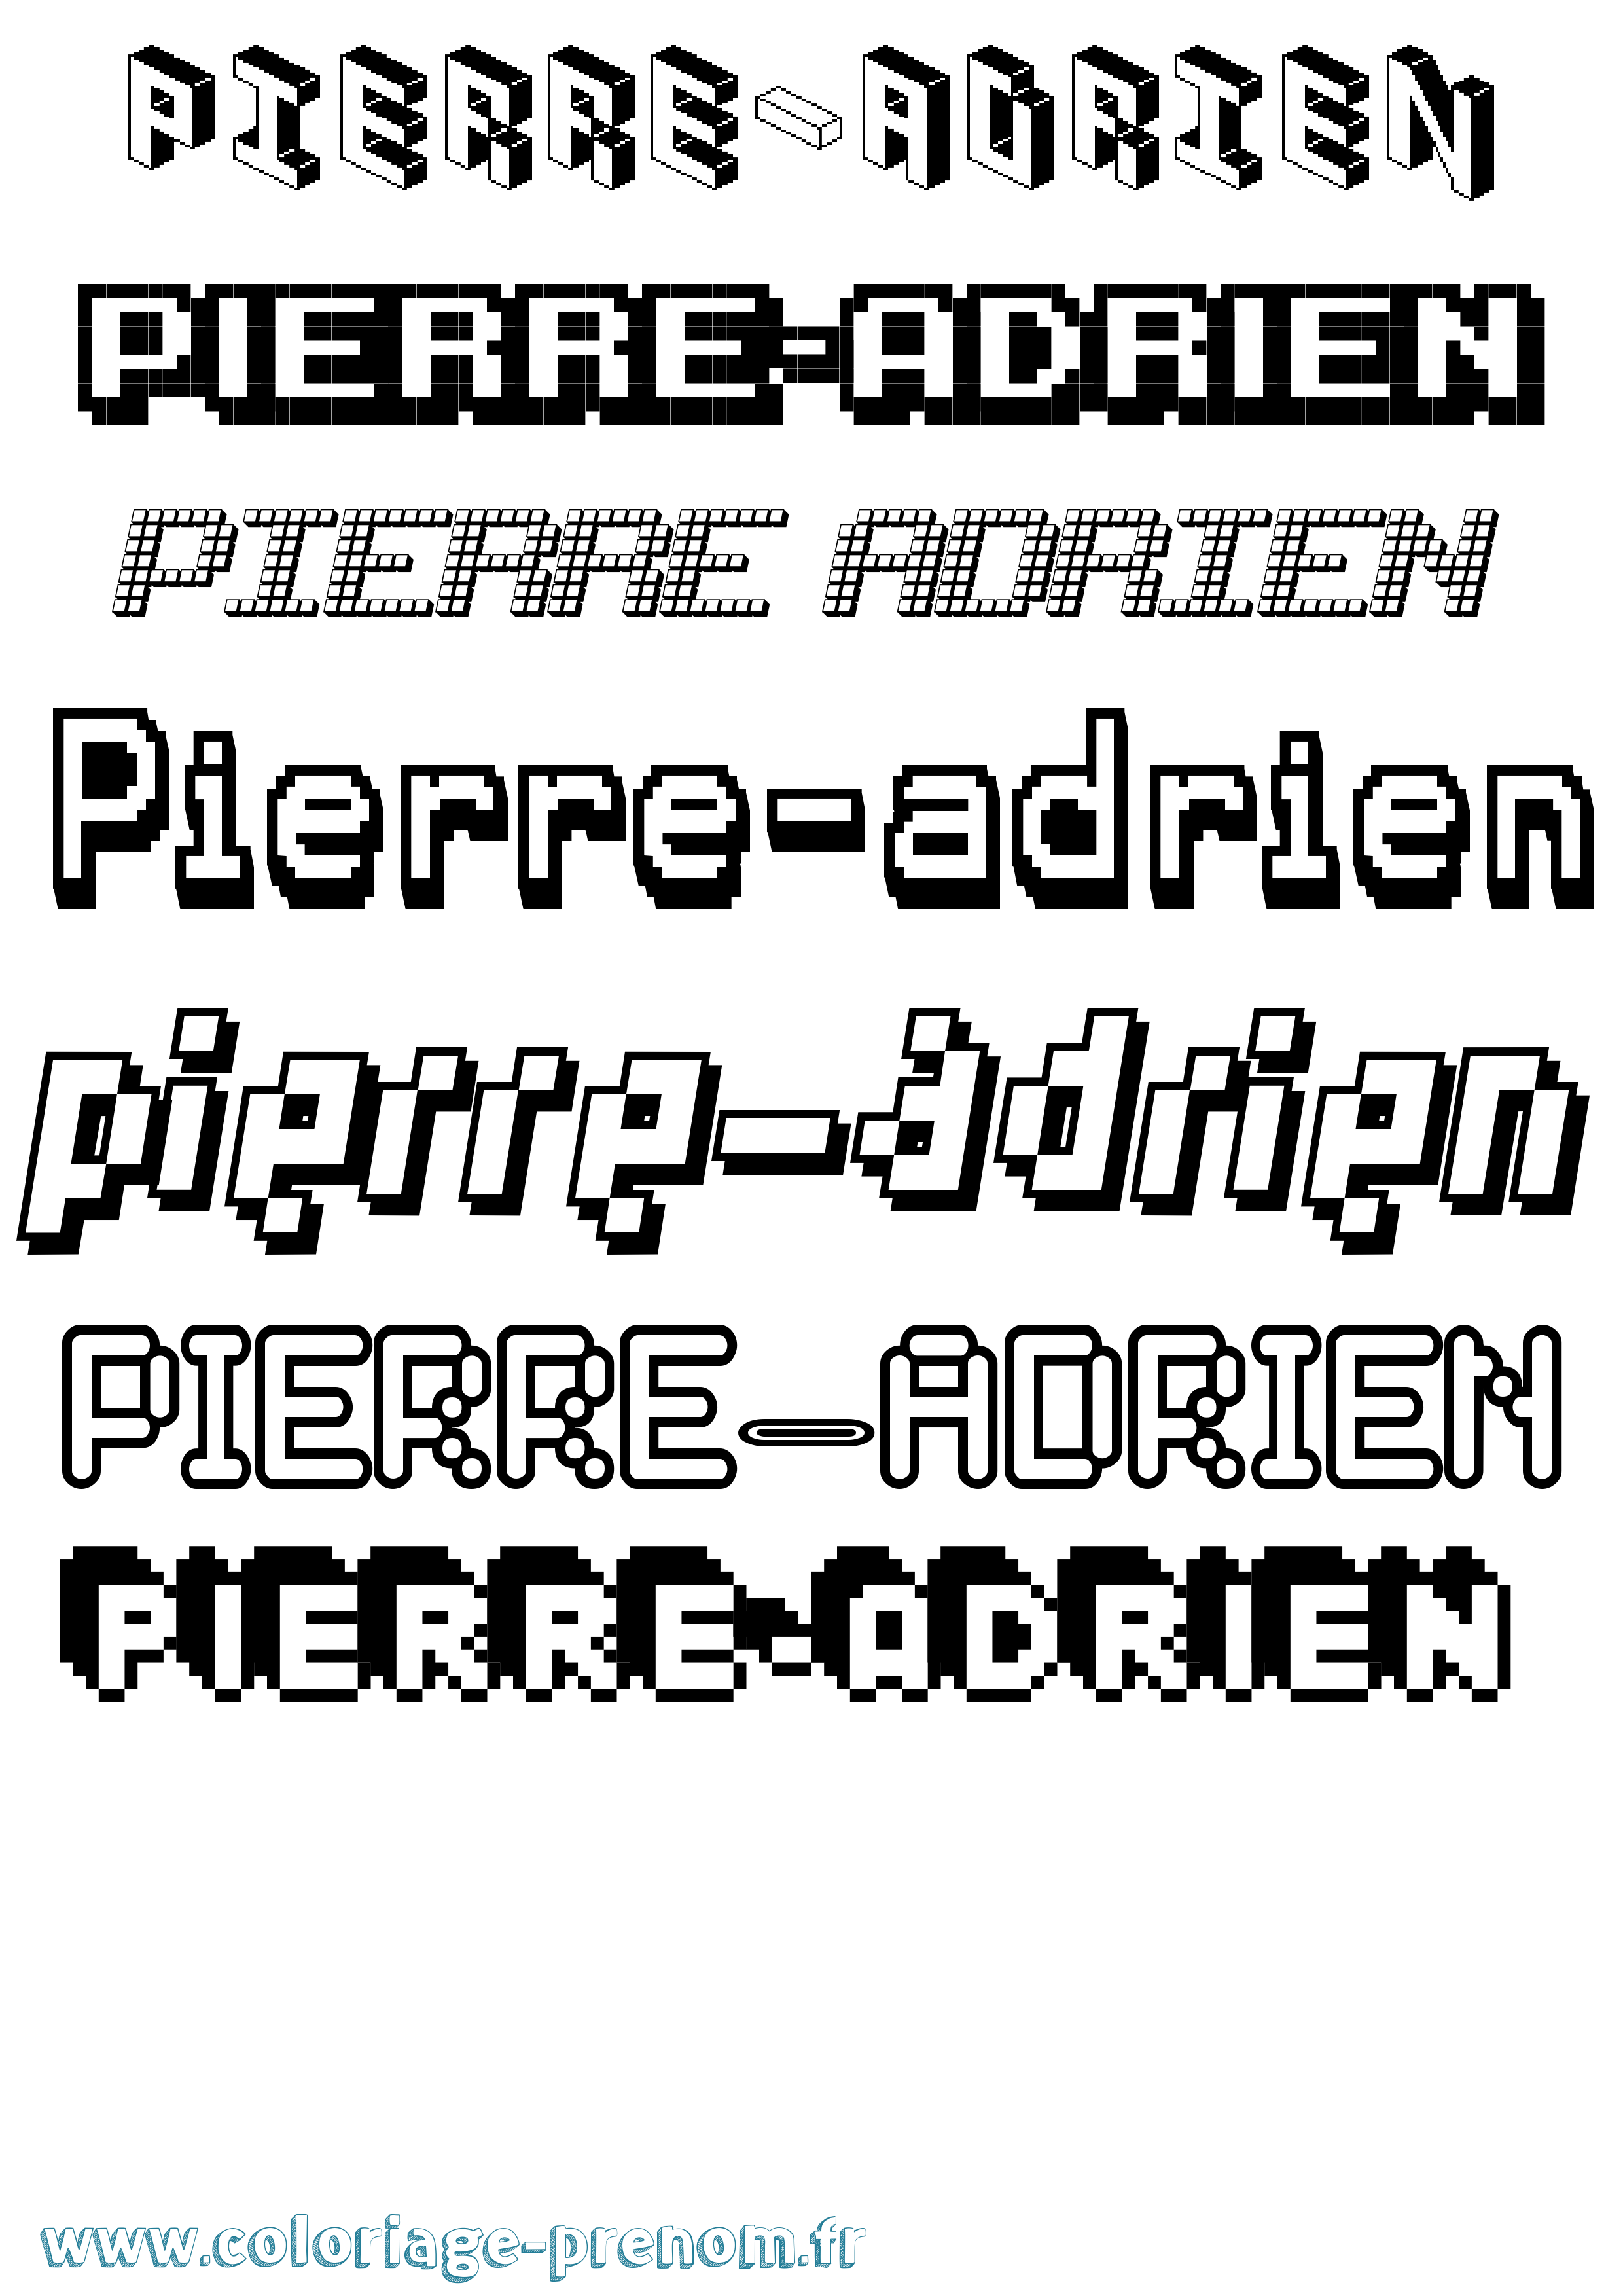 Coloriage prénom Pierre-Adrien Pixel